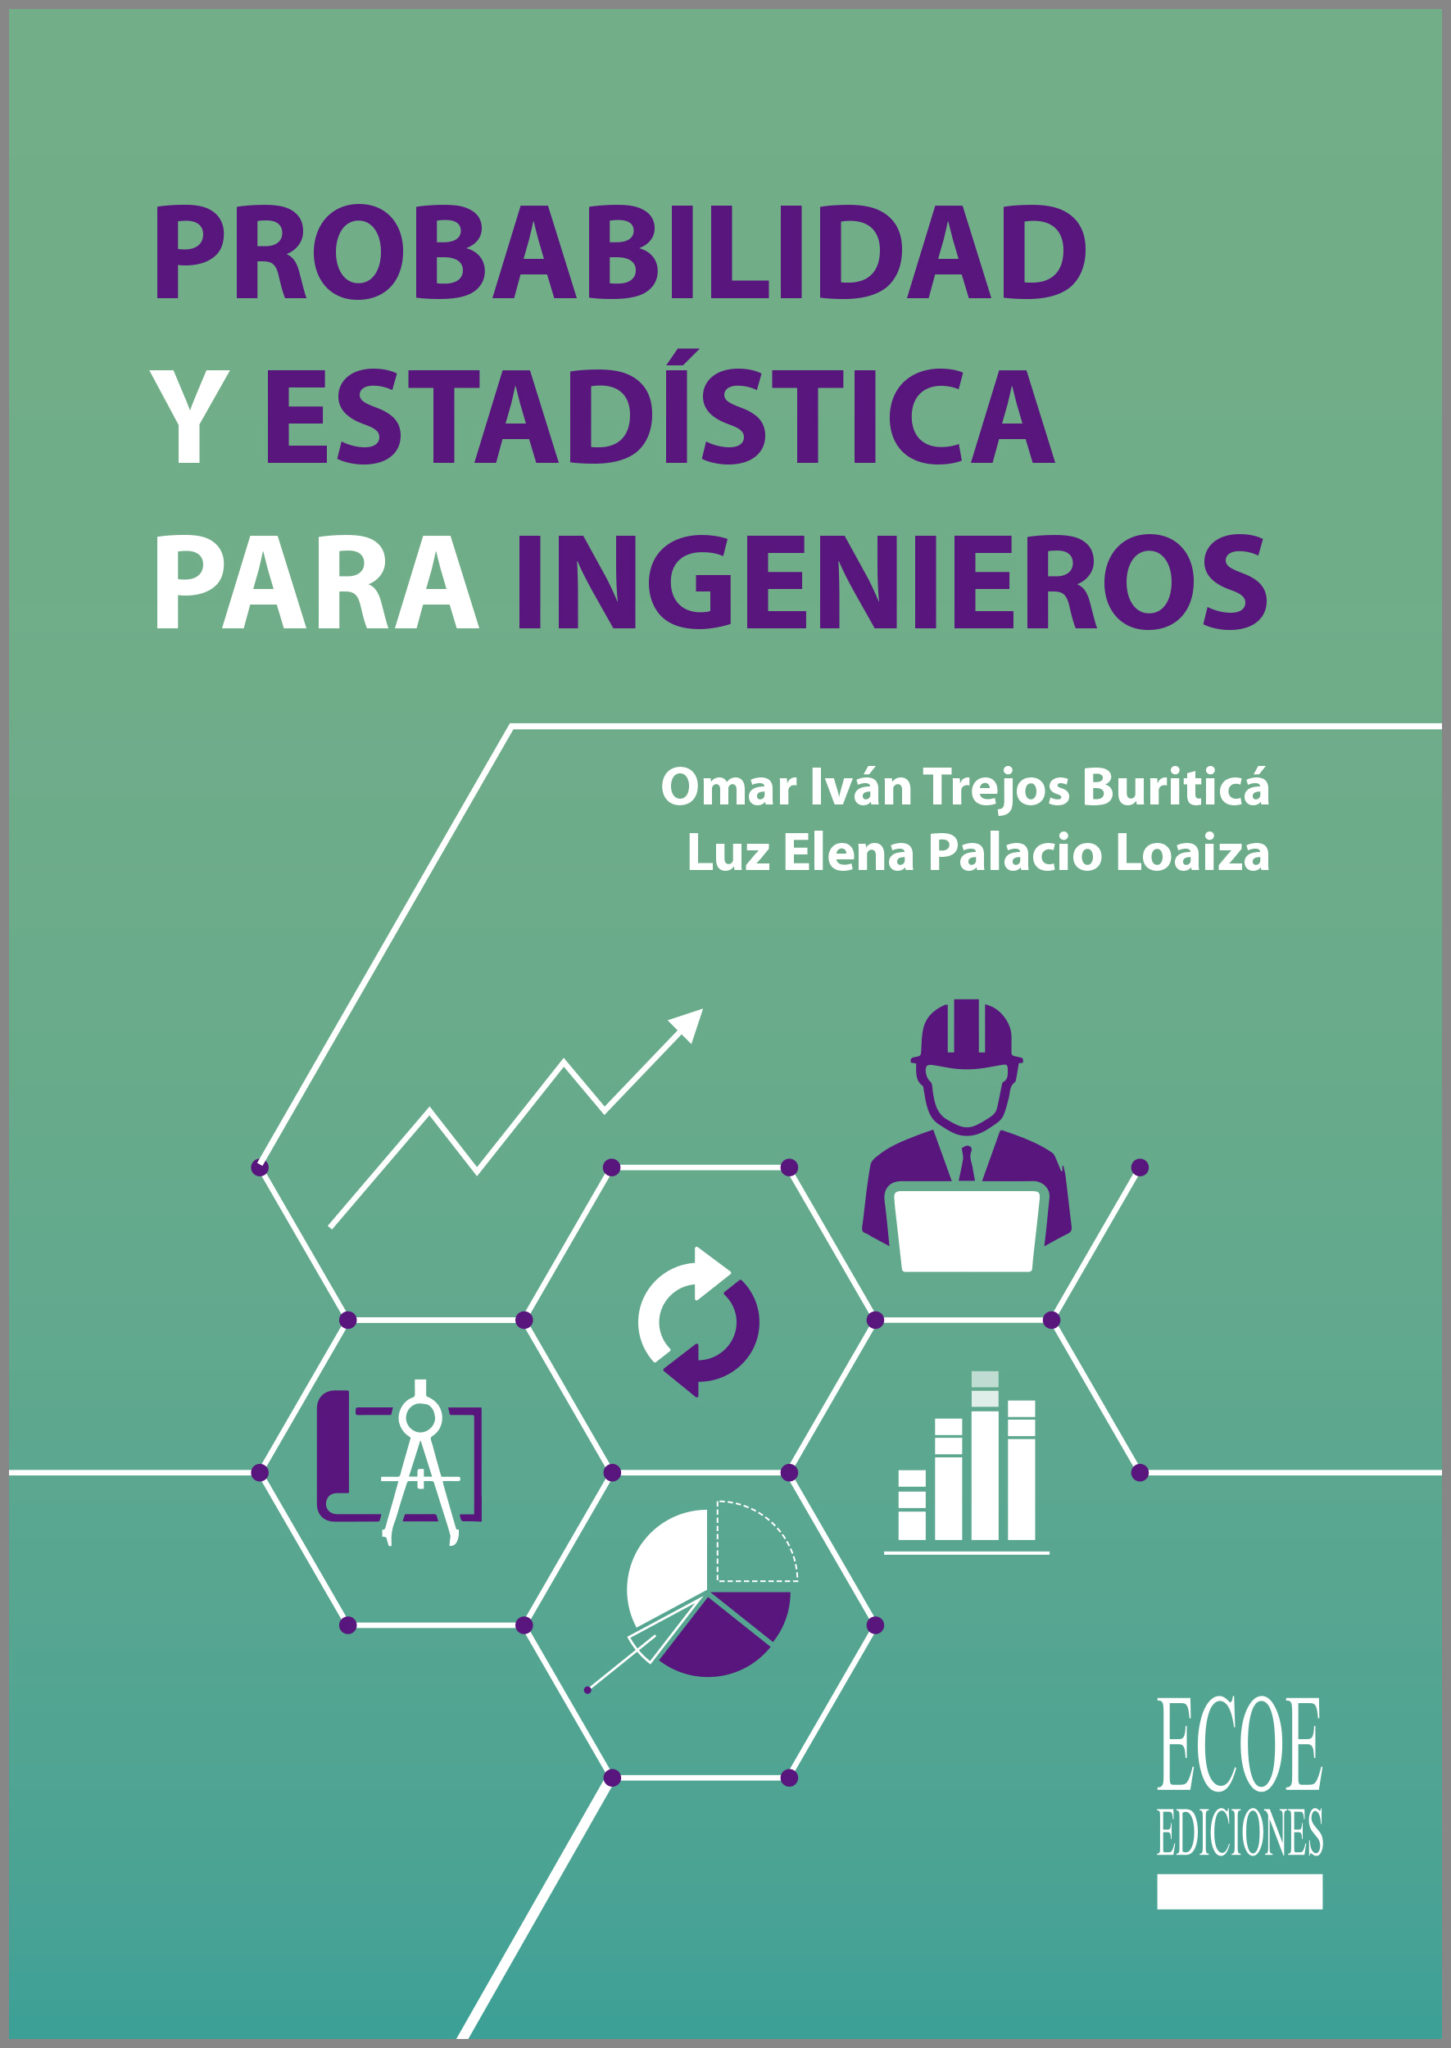 Probabilidad y estadística para ingenieros – Ecoe Ediciones